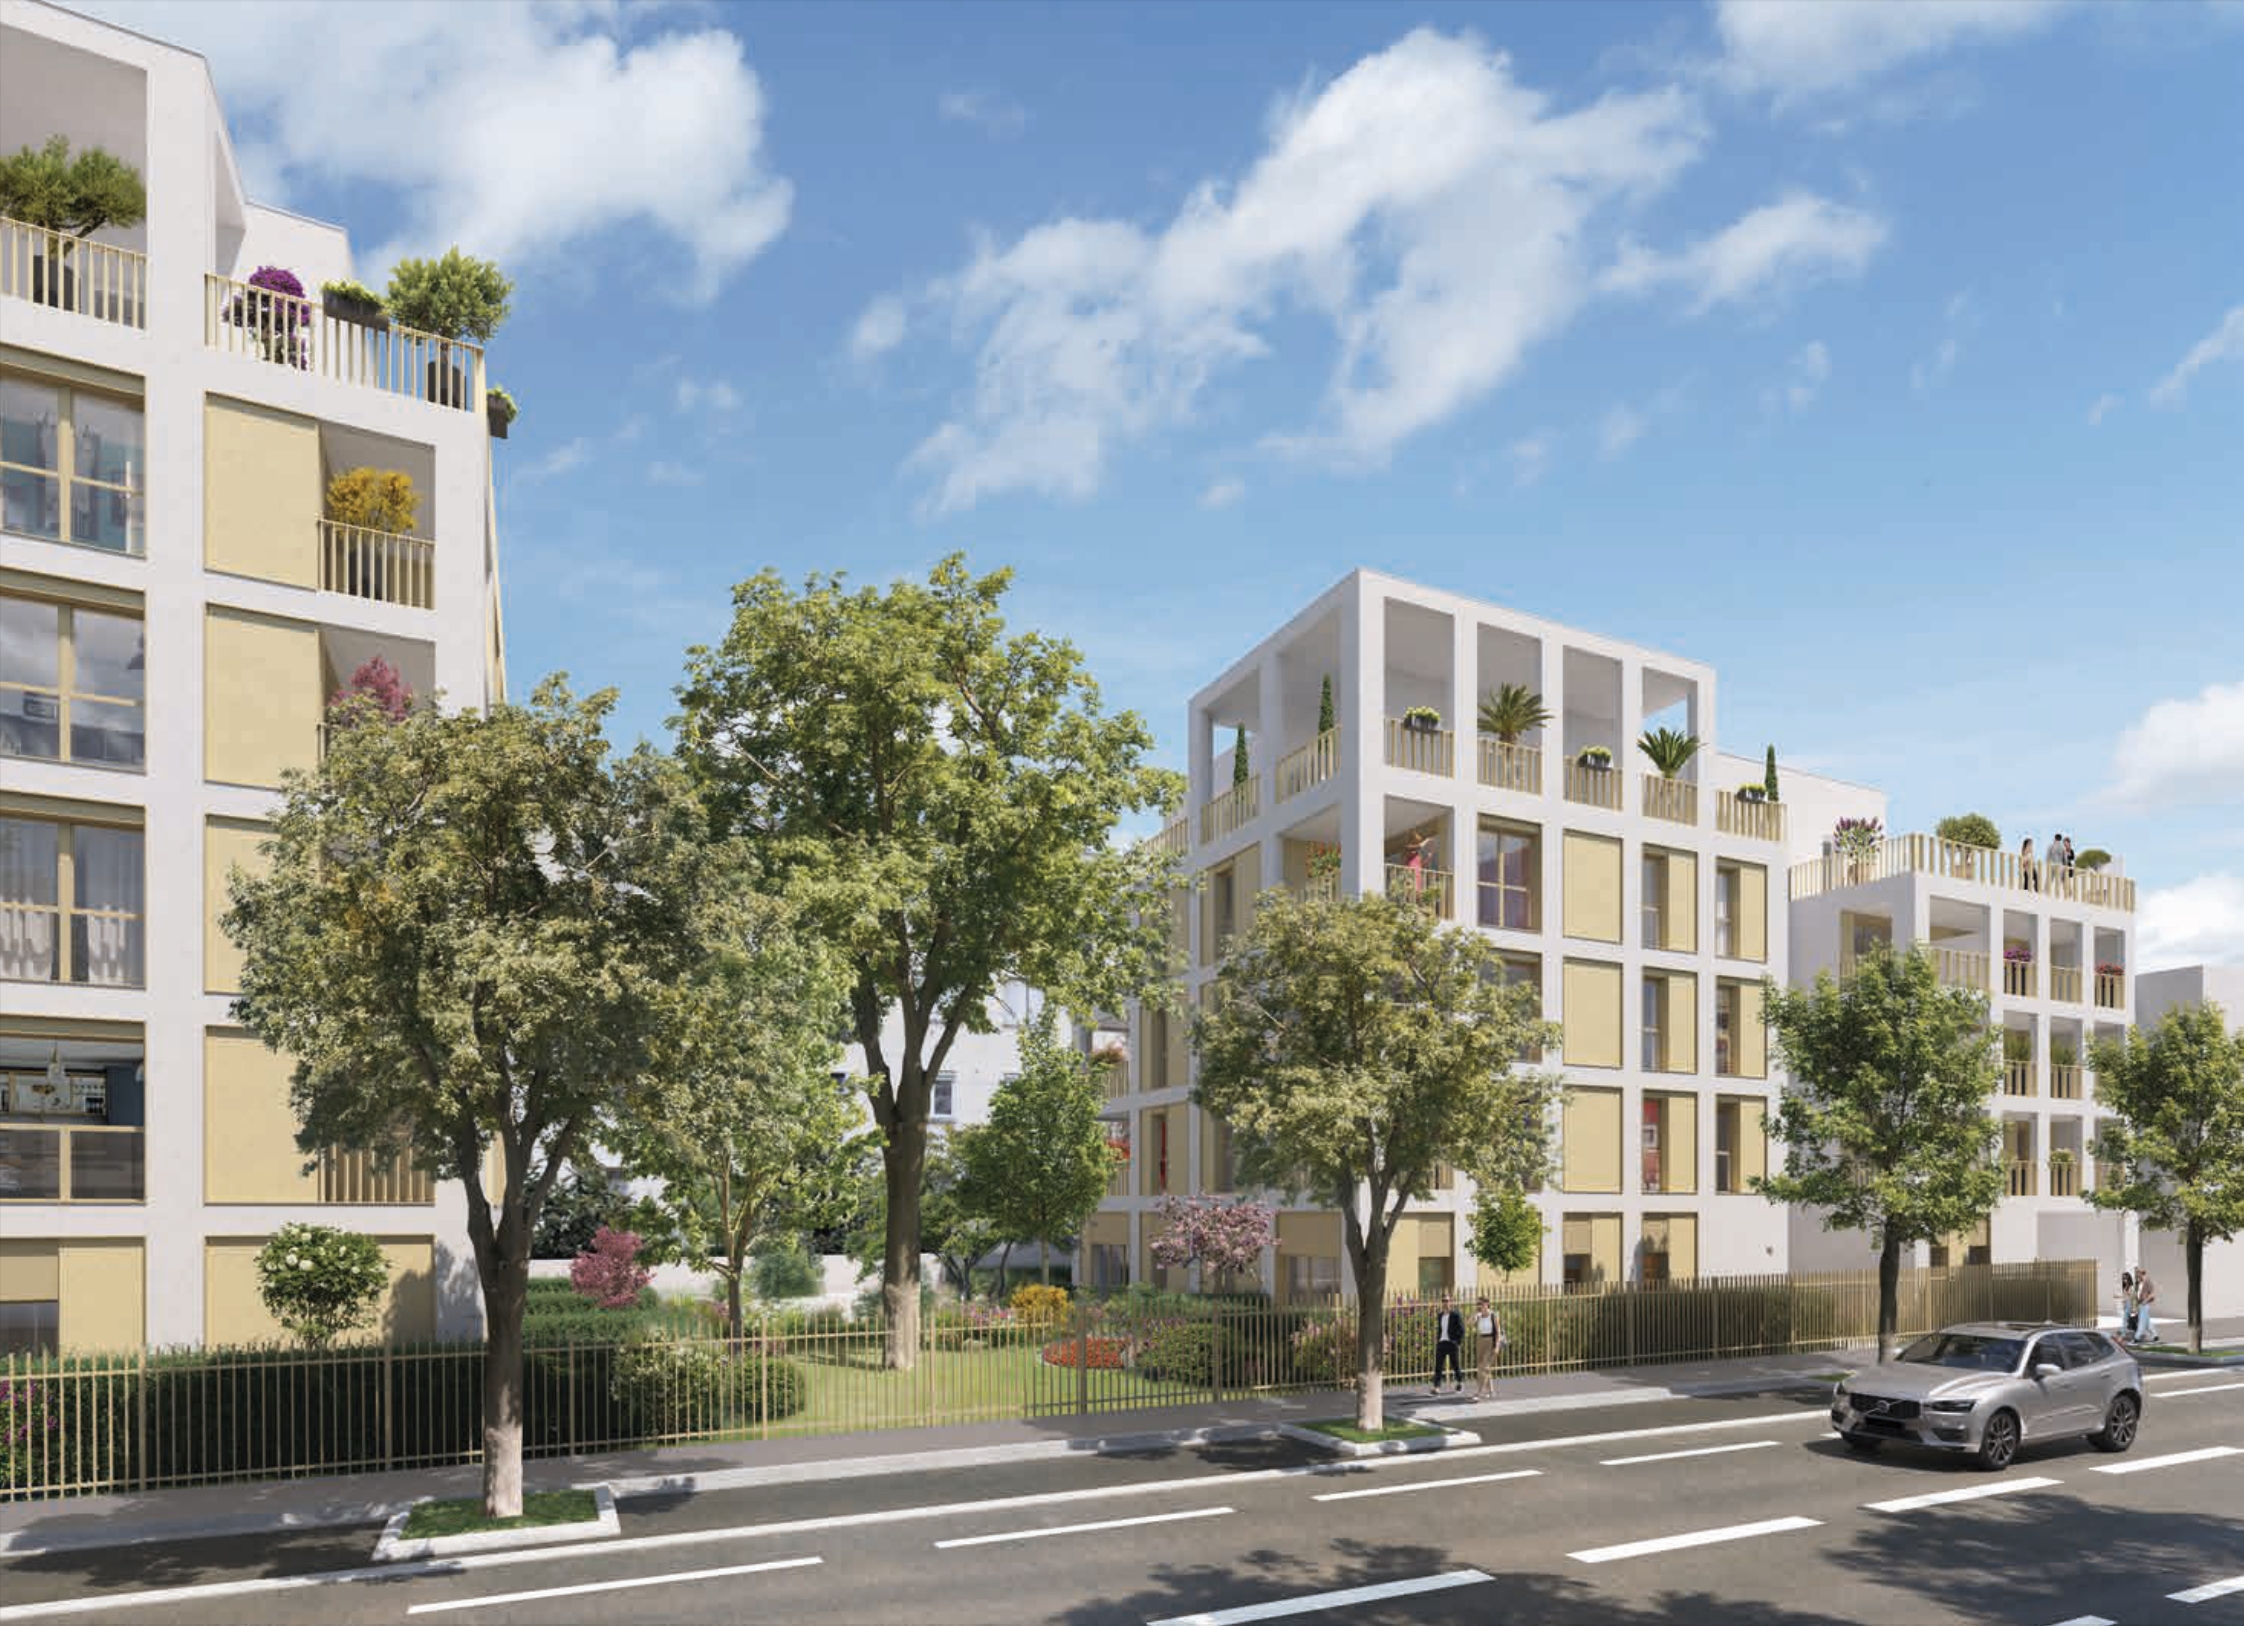  programme immobilier neuf  Loi Pinel livrable 2024 quartier Moulin A Vent 